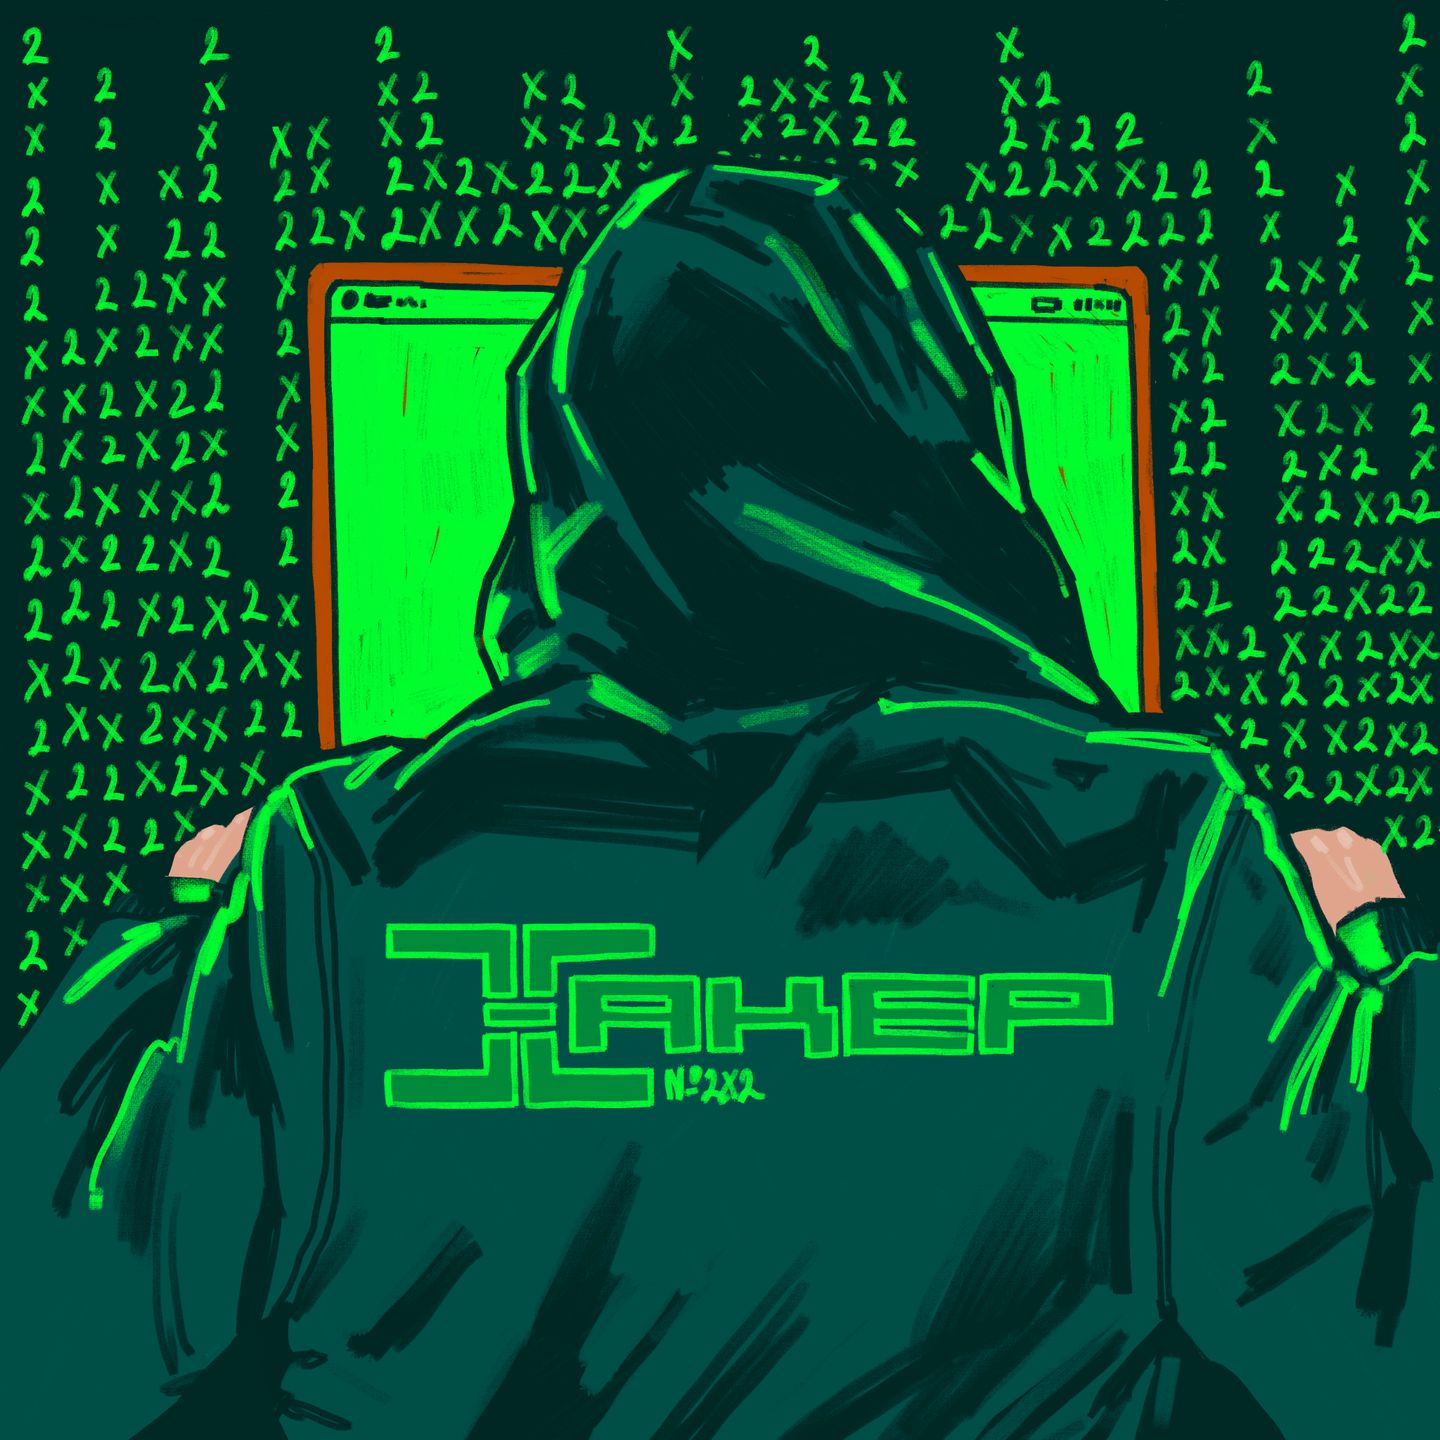 История журнала «Хакер»: от видеоигр к компьютерному хулиганству